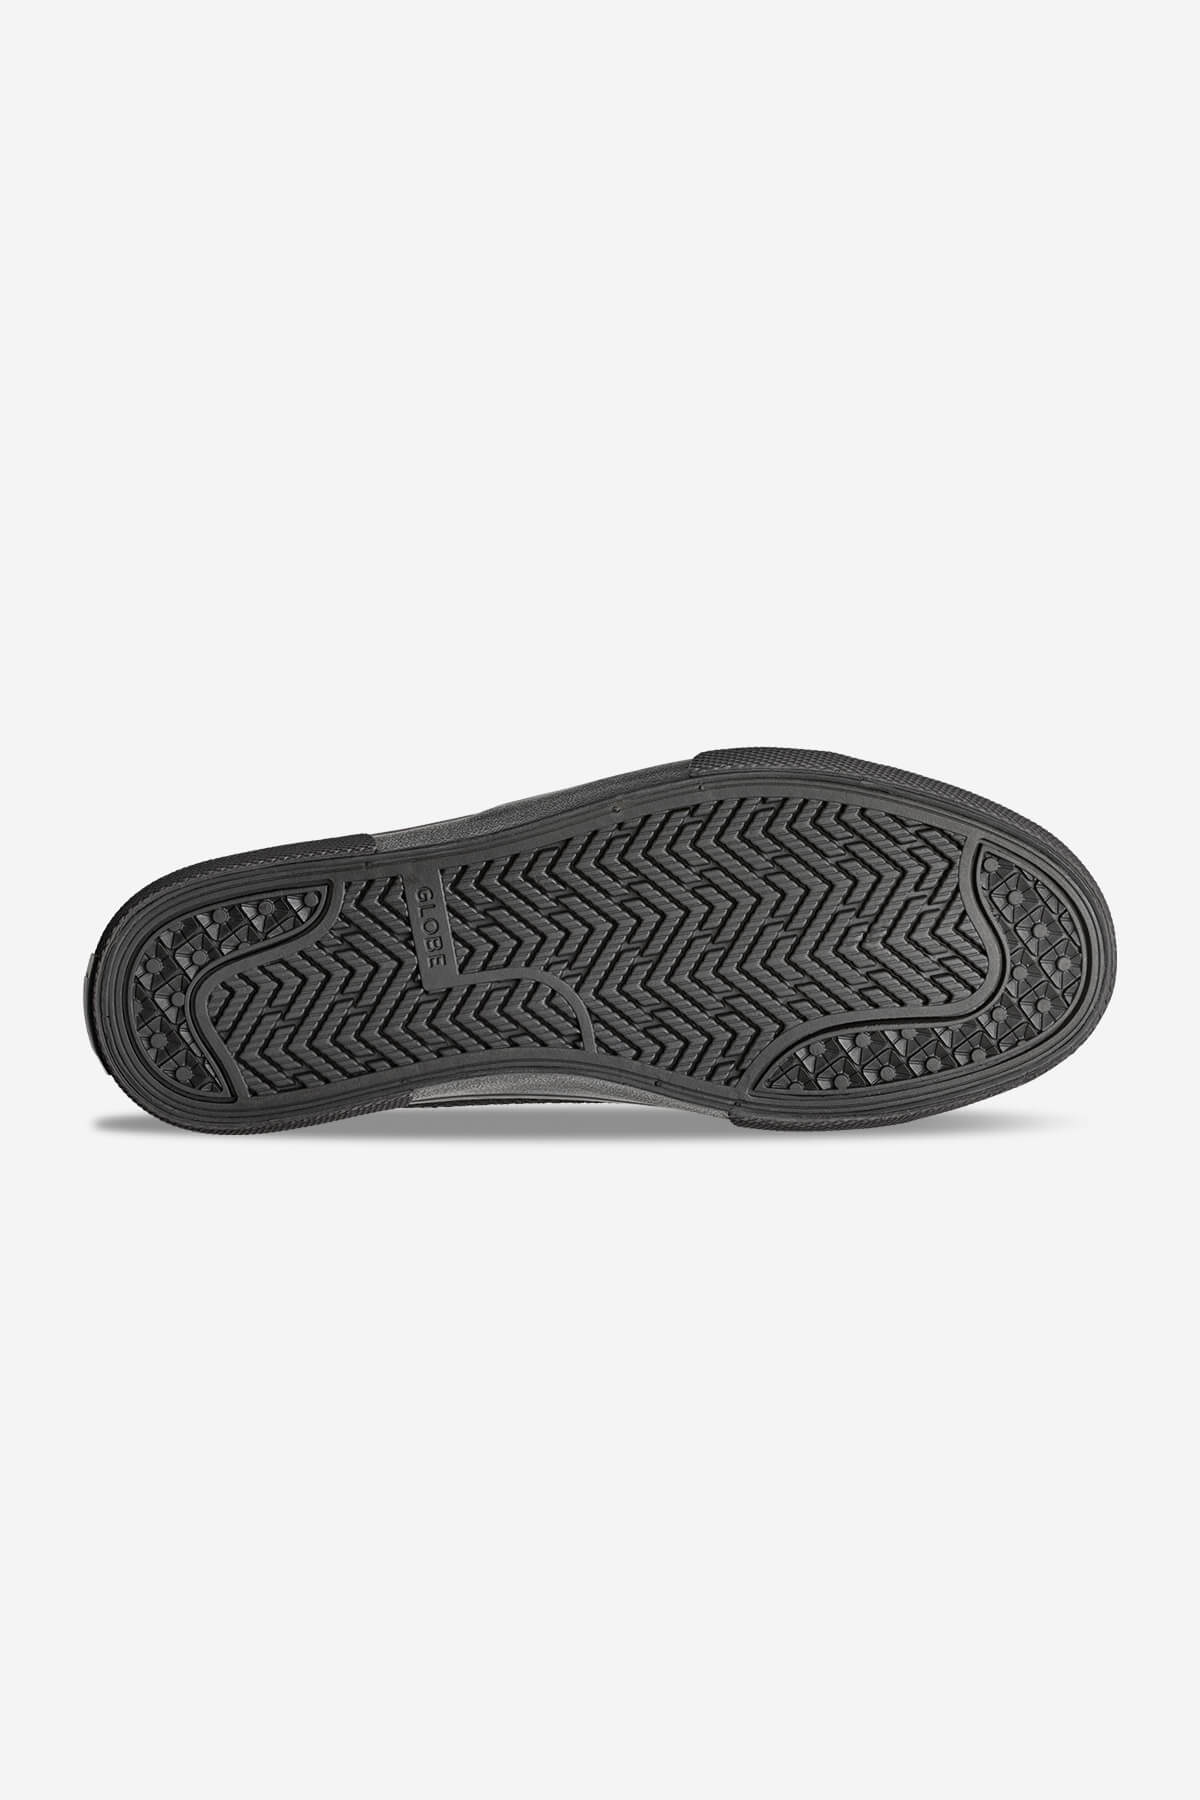 surplus tricot noir tricot noir skateboard chaussures